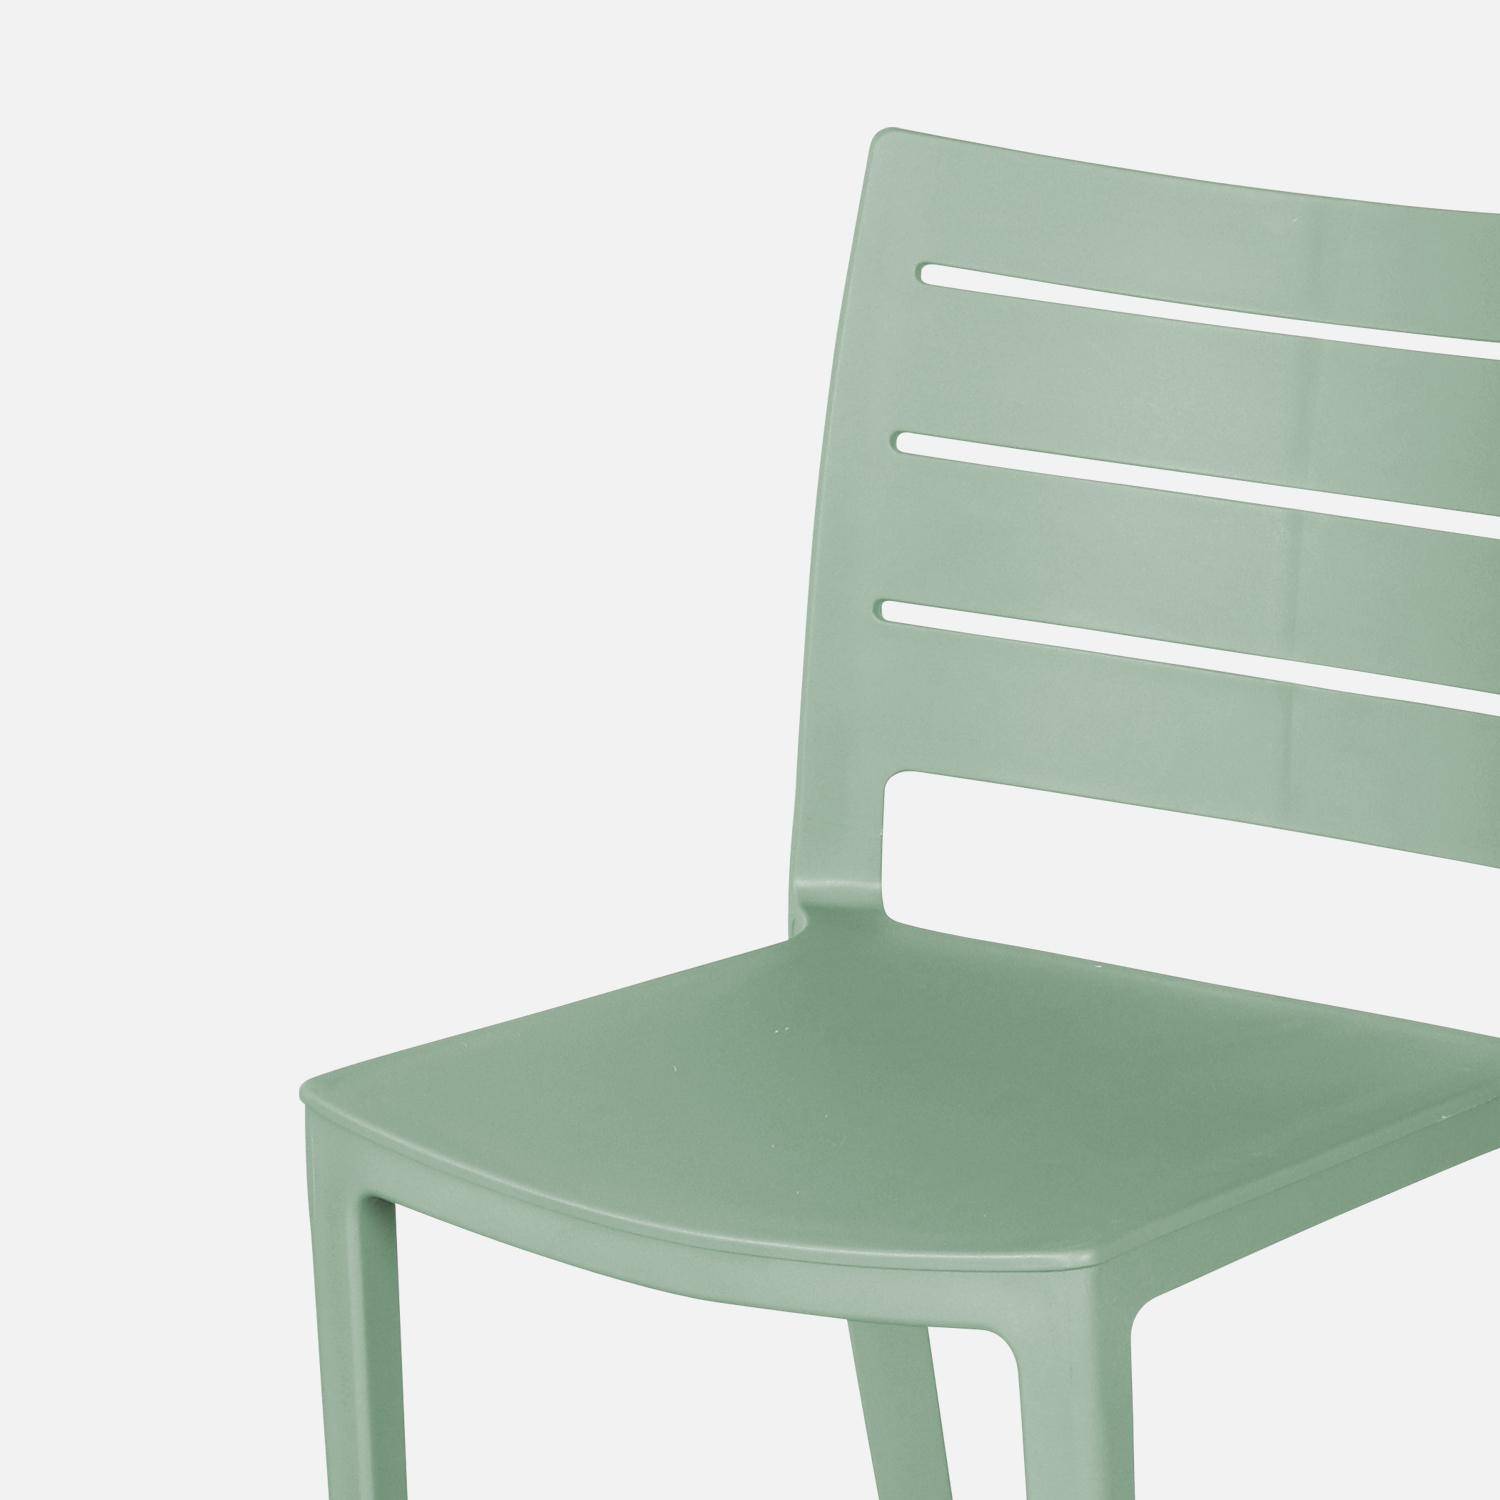 4er Set Gartenstühle aus graugrünem Kunststoff, stapelbar, bereits zusammengebaut - Jeanne,sweeek,Photo4